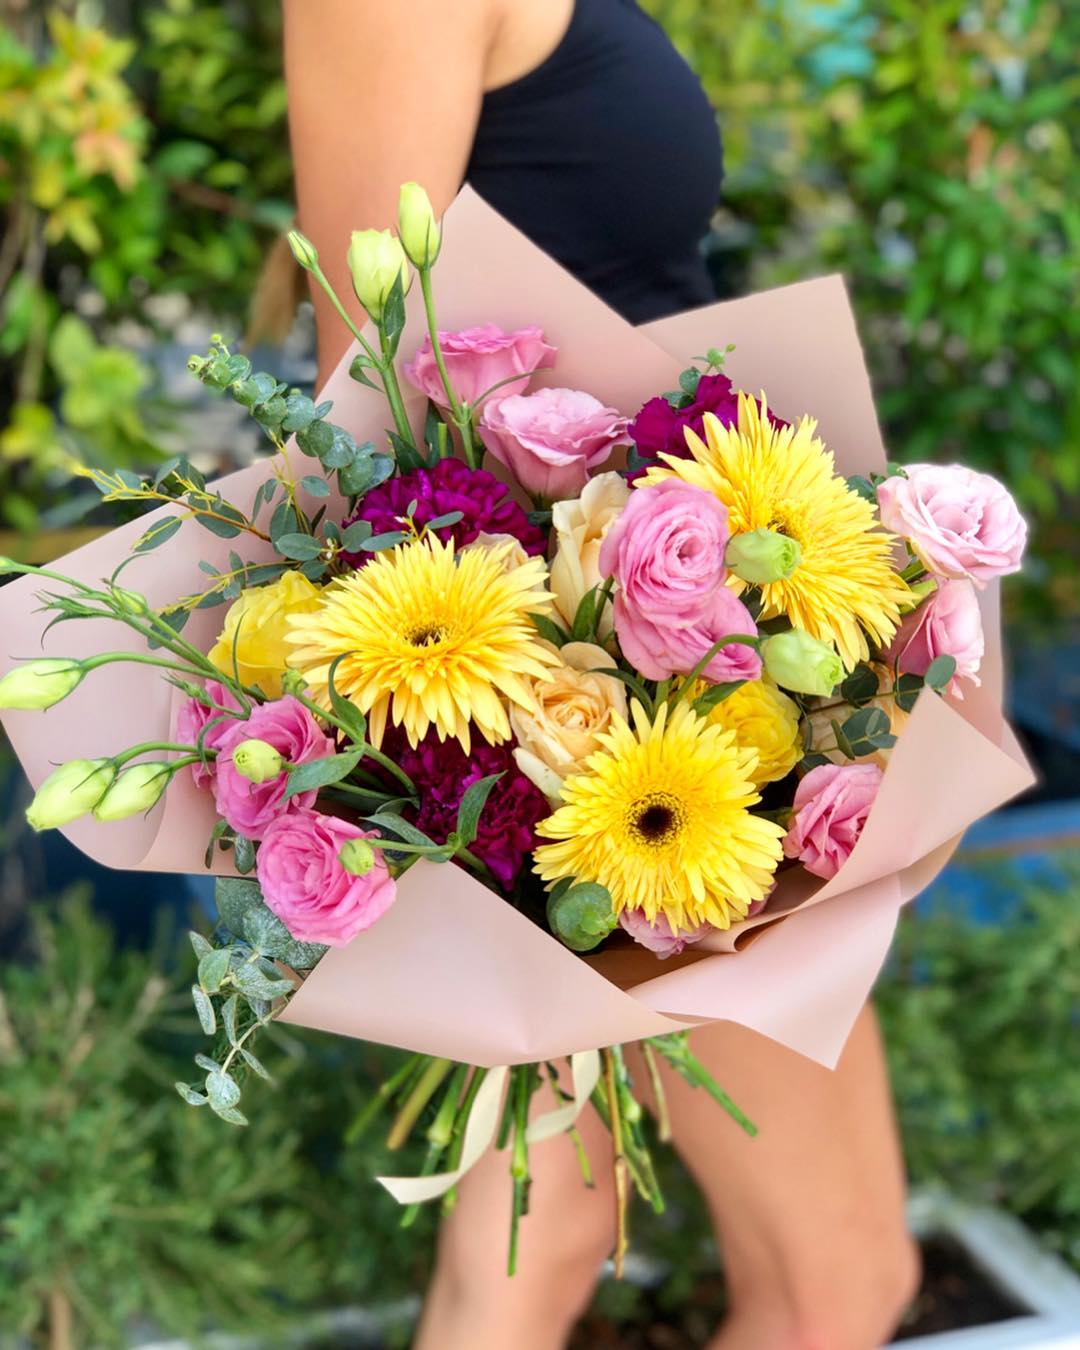 FloraExpress • Доставка цветов - Солнечного настроения вас в ленту☀️
Любите друг друга и будте счастливы❤️